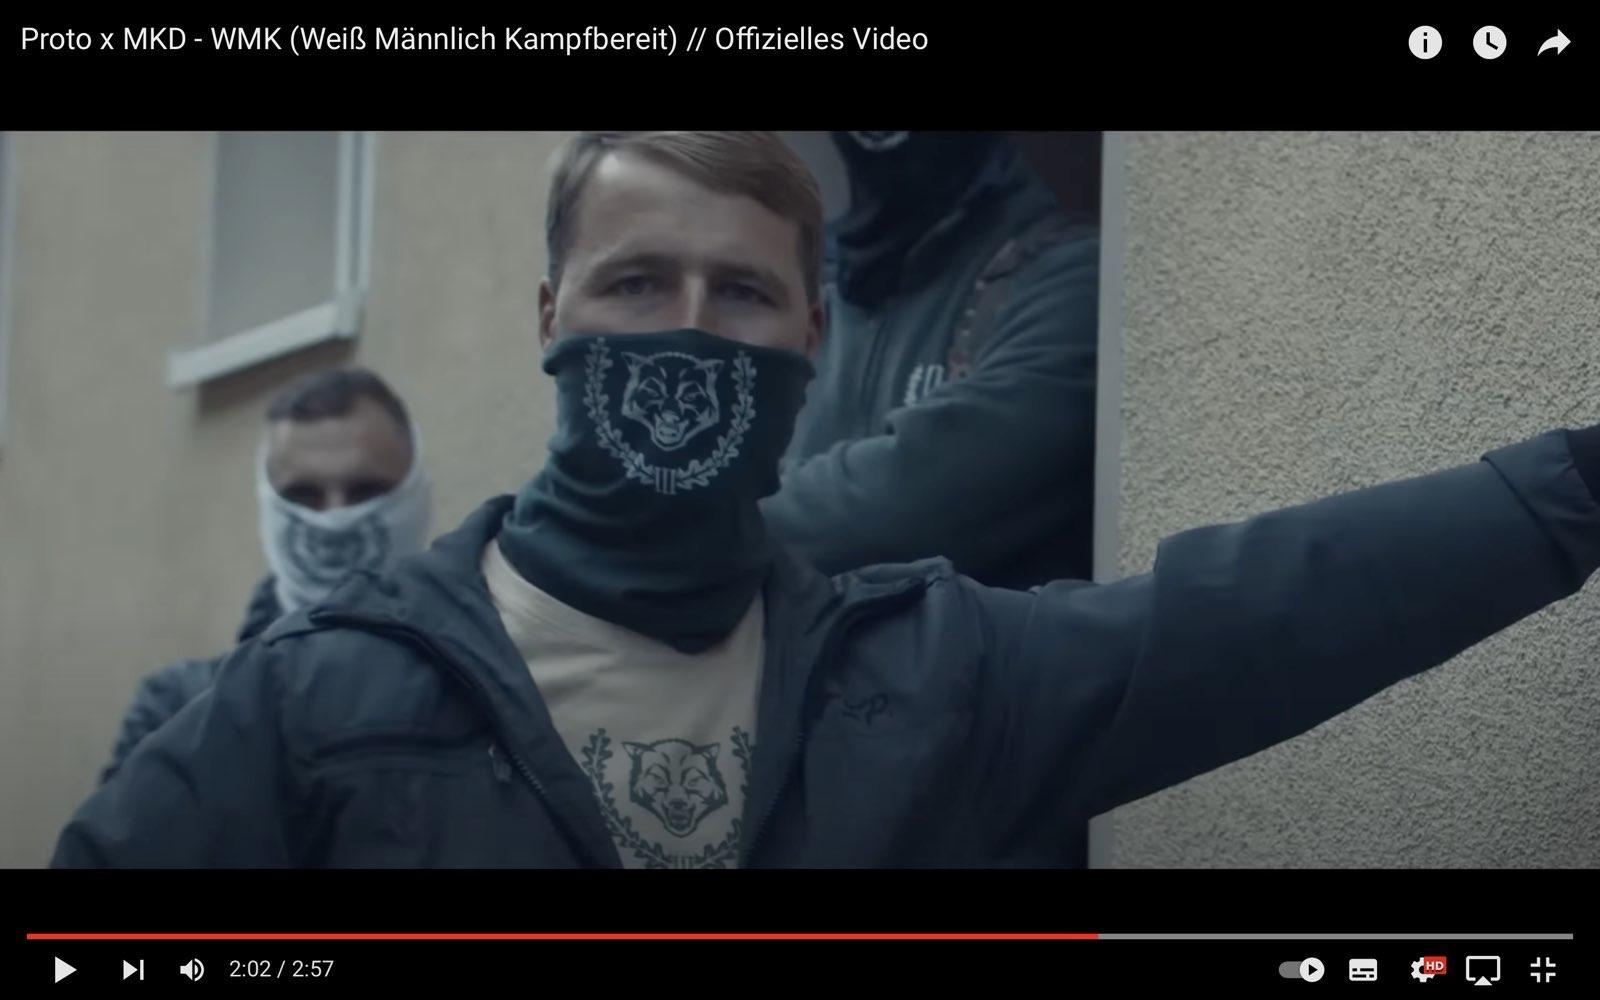 Torsten Rakow im Video zu Weiß, Männlich, Kampfbereit.